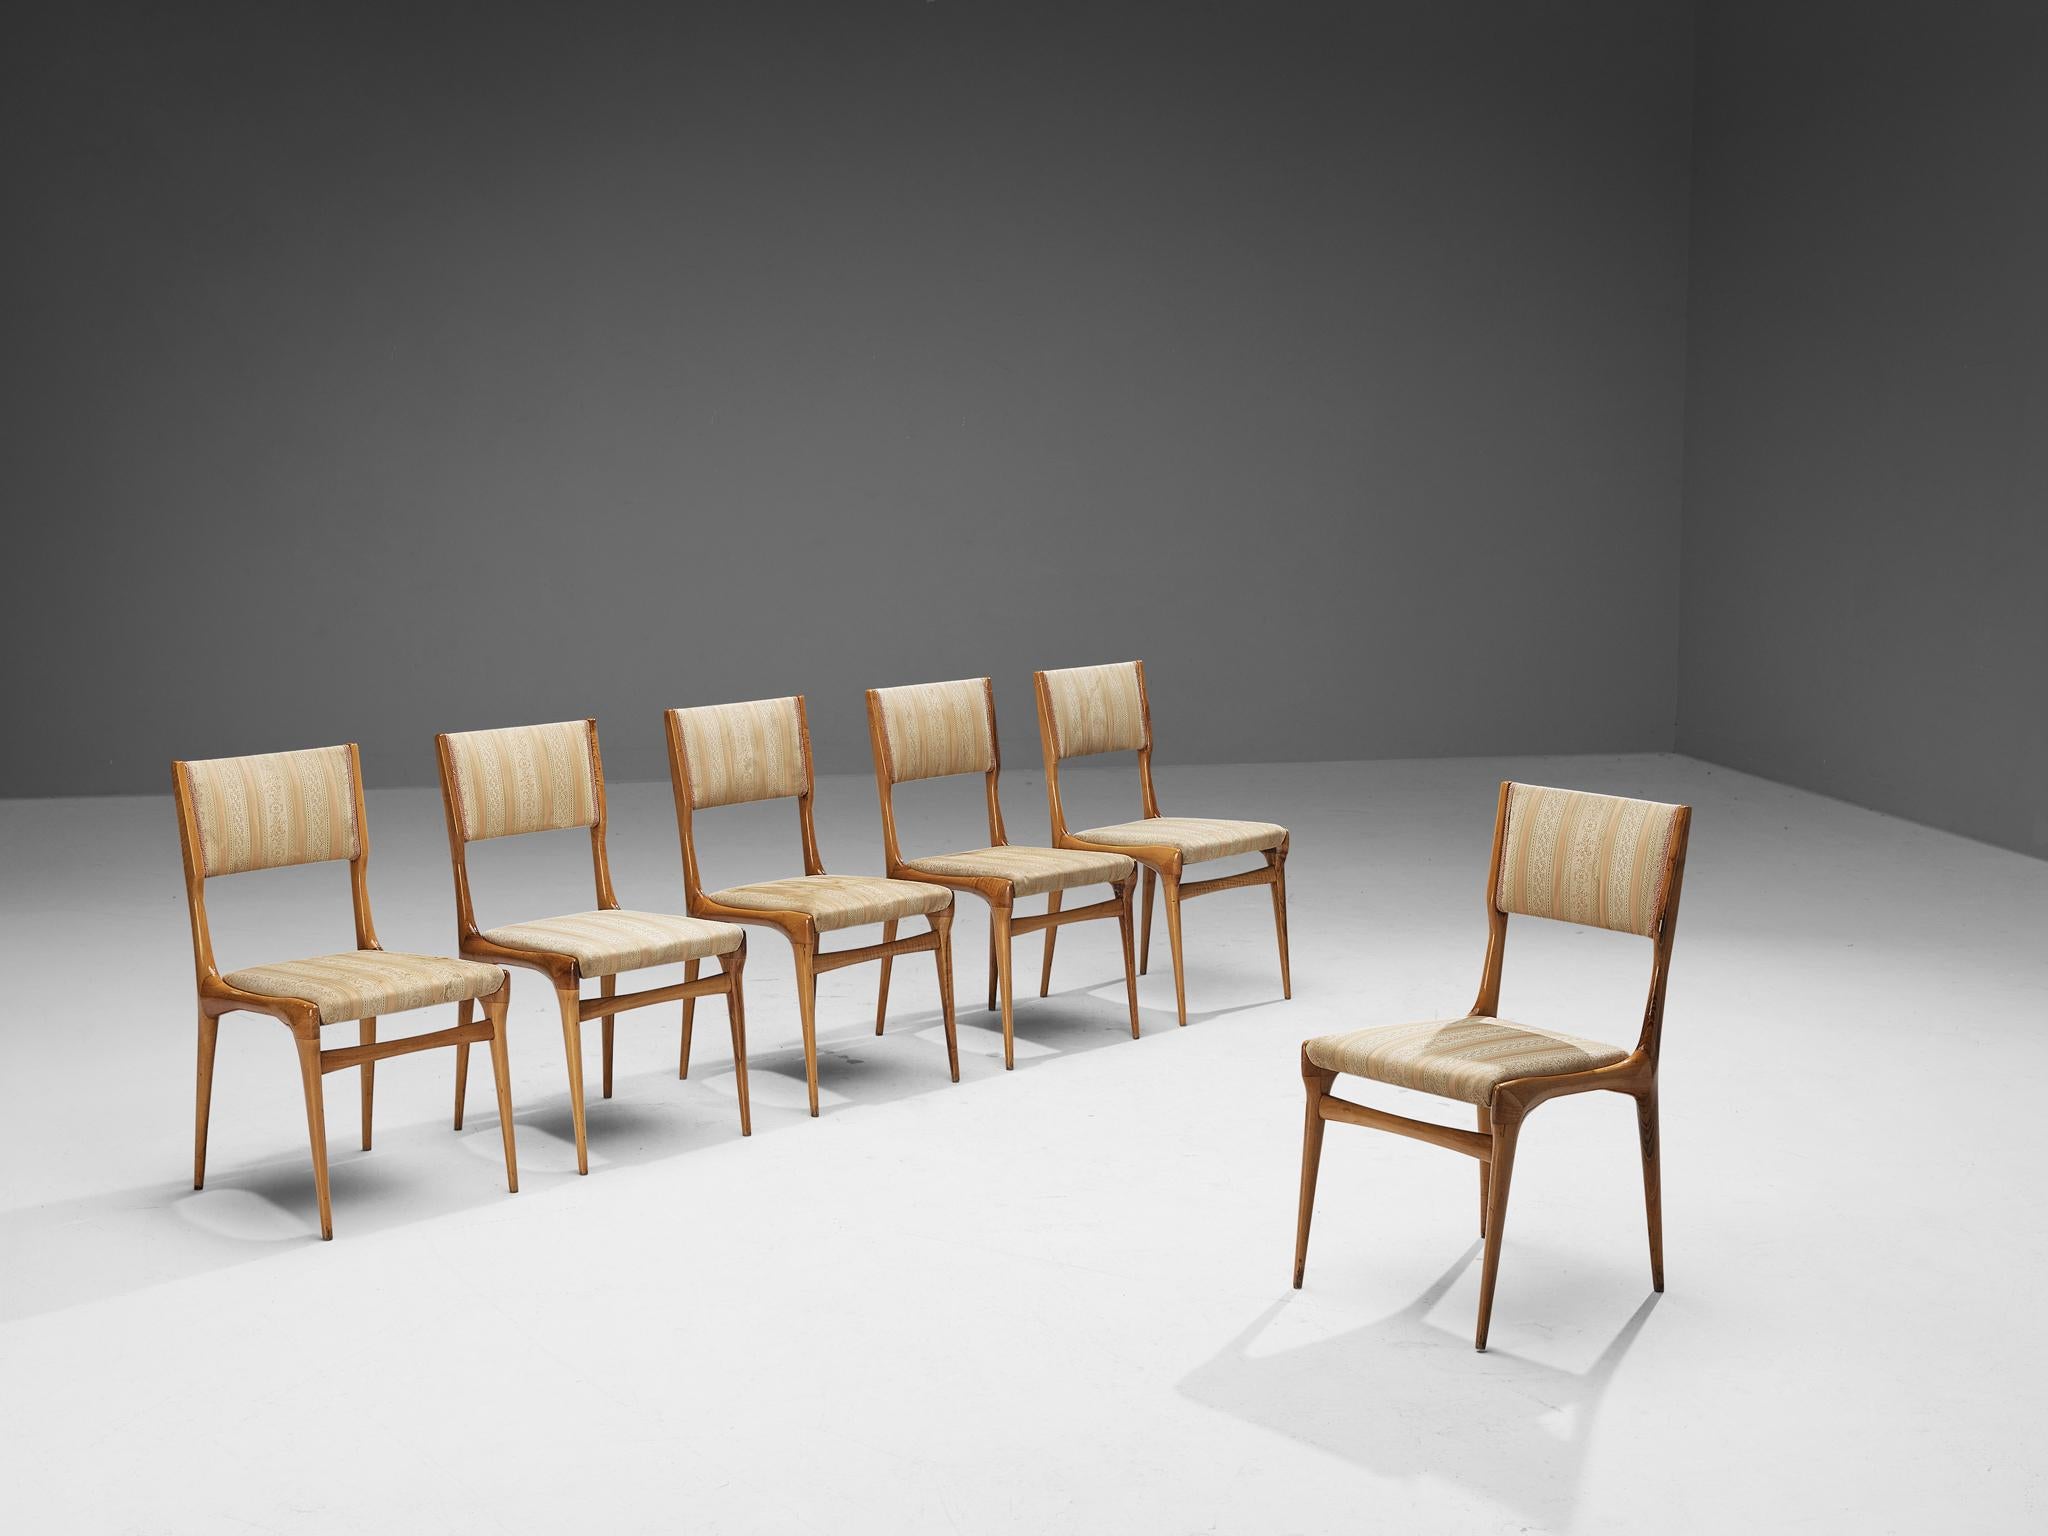 Carlo De Carli pour Cassina, ensemble de six chaises de salle à manger, modèle '671', noyer, tissu, Italie, 1953.

Ces chaises de salle à manger reprennent véritablement le vocabulaire esthétique et le travail du bois typique de Carlo De Carli. Le